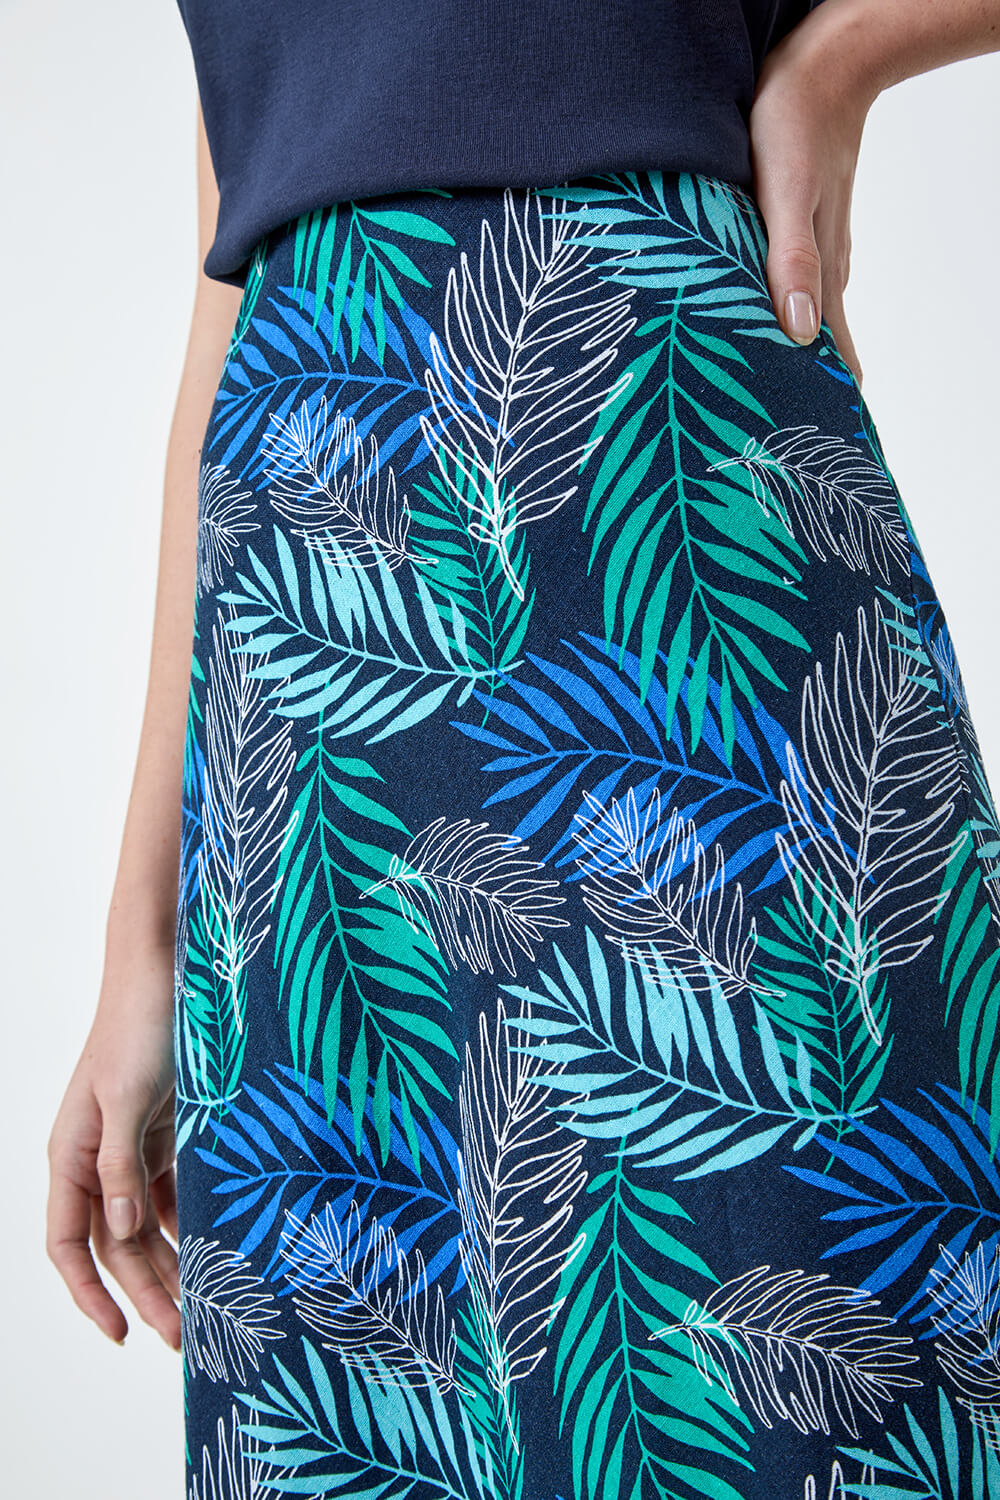 Blue Leaf Print Linen Blend A-Line Skirt, Image 5 of 5